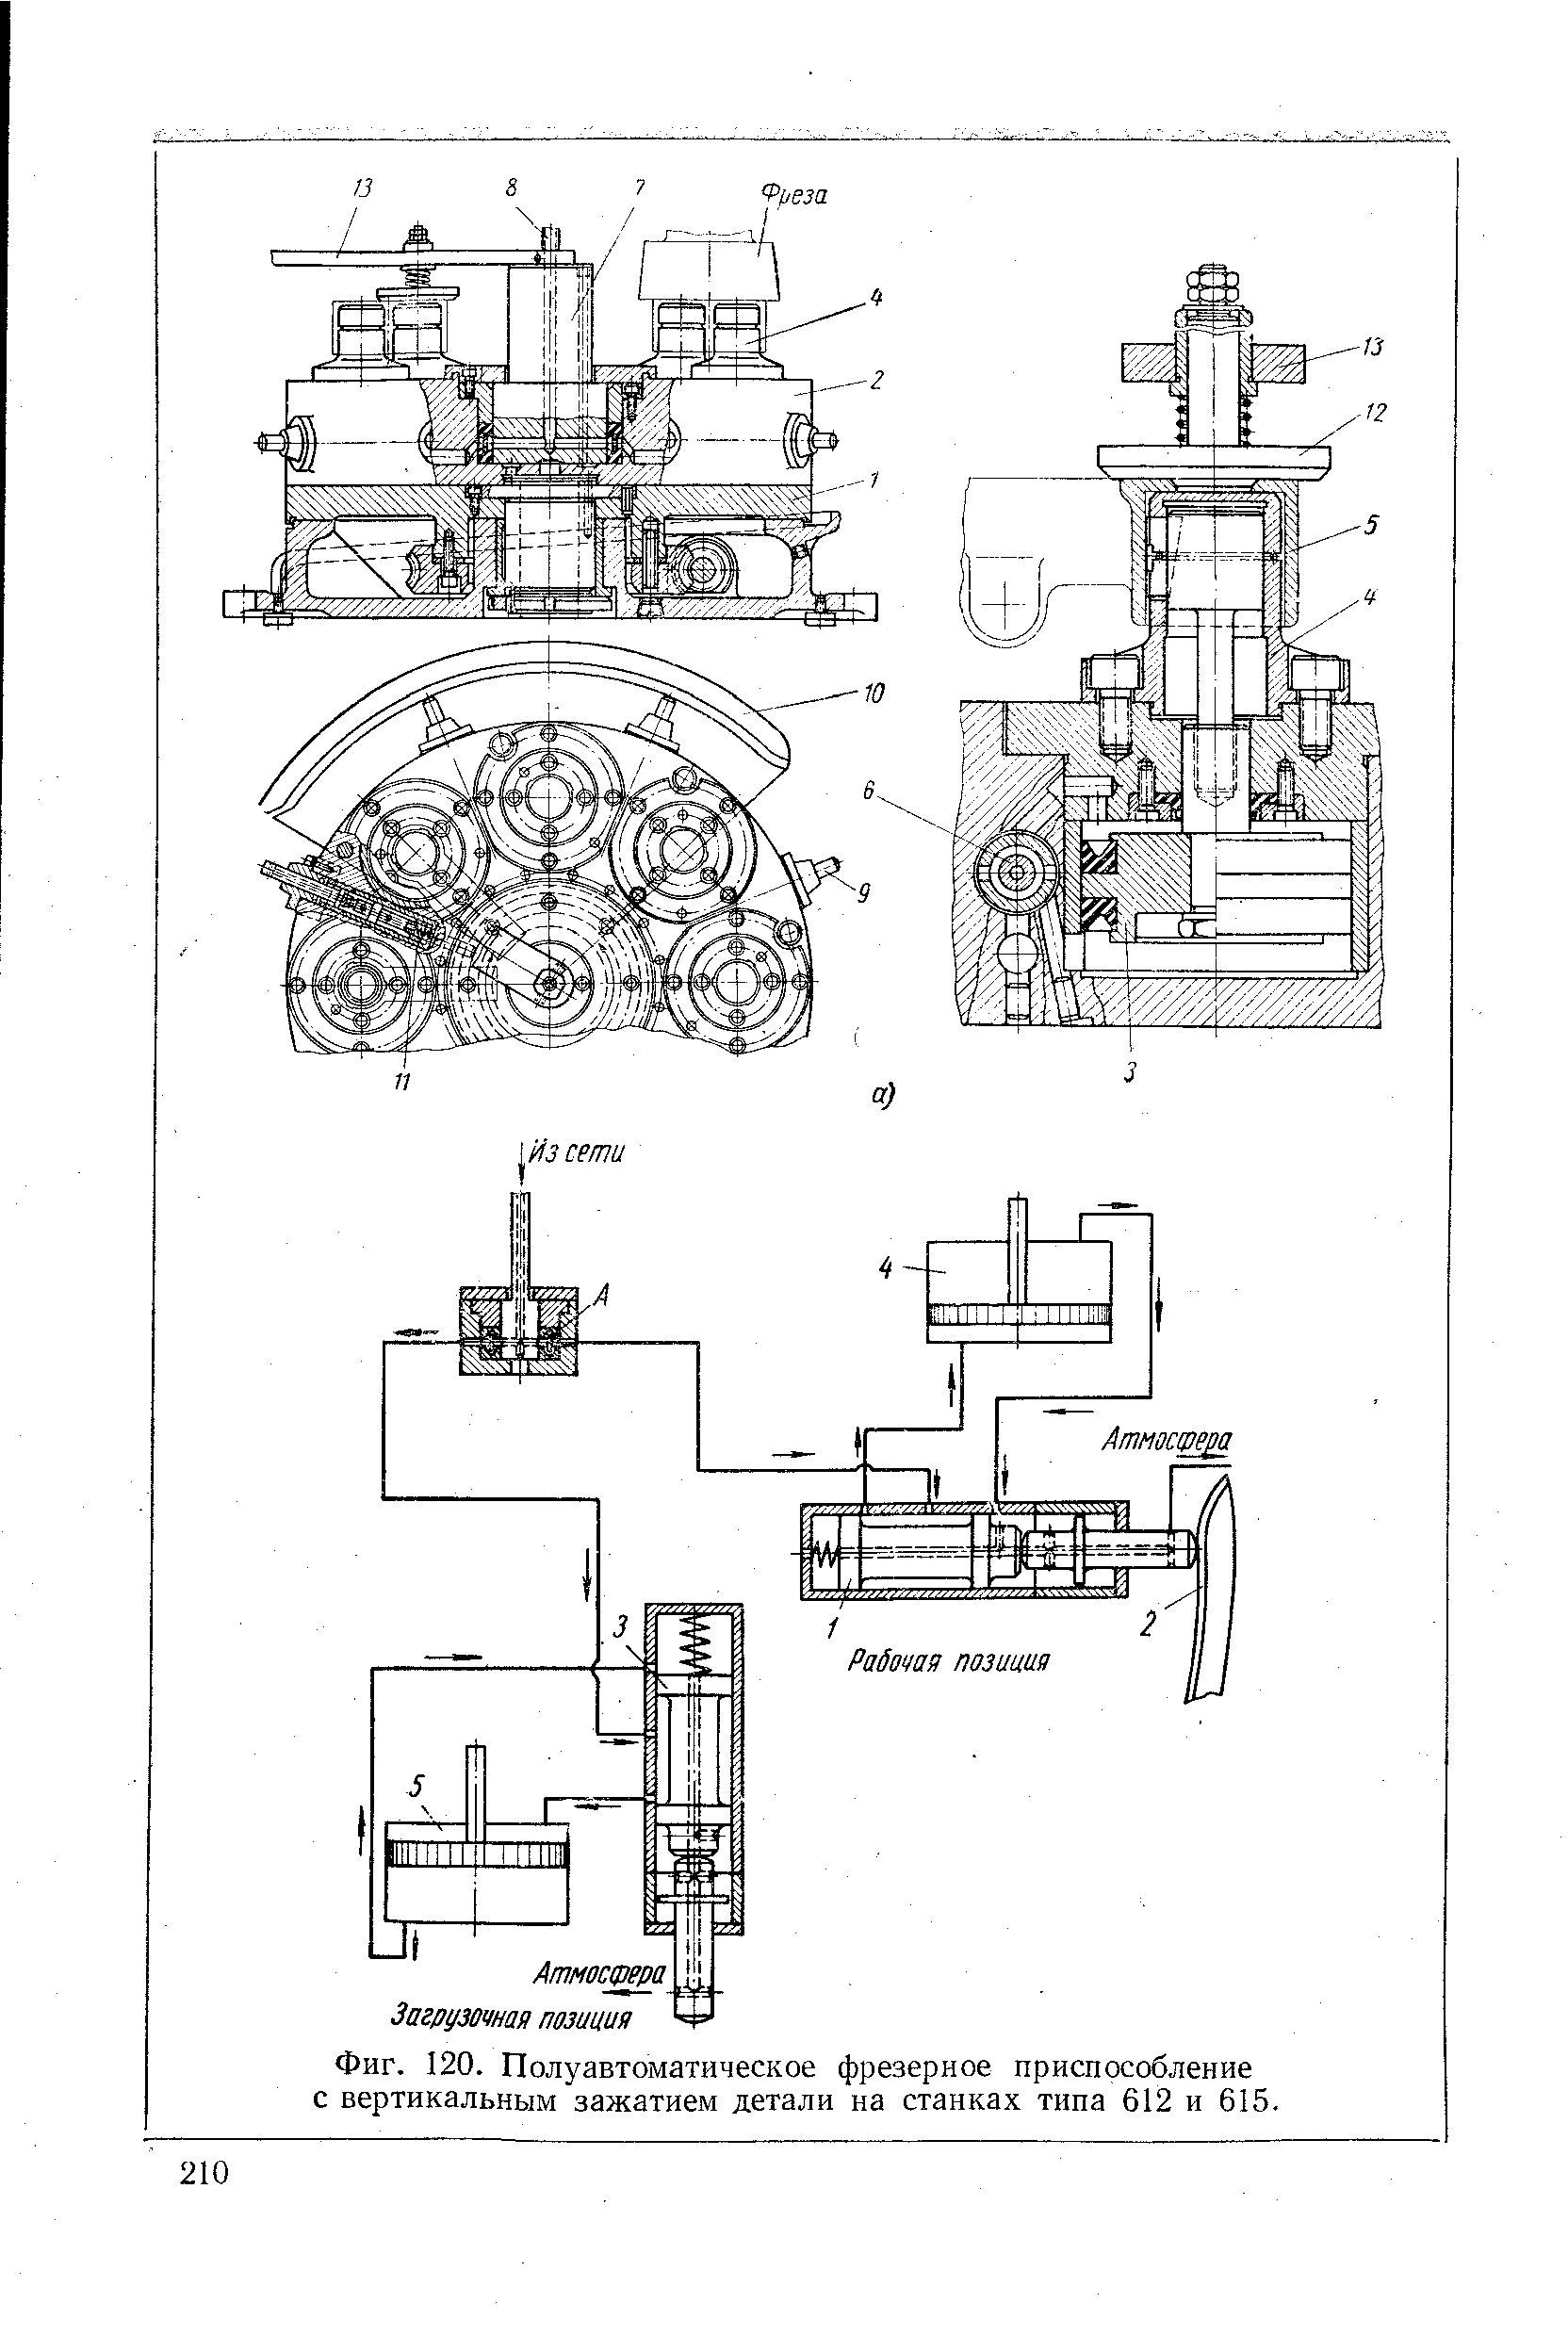 Фиг. 120. Полуавтоматическое фрезерное приспособление с вертикальным зажатием детали на станках типа 612 и 615.
